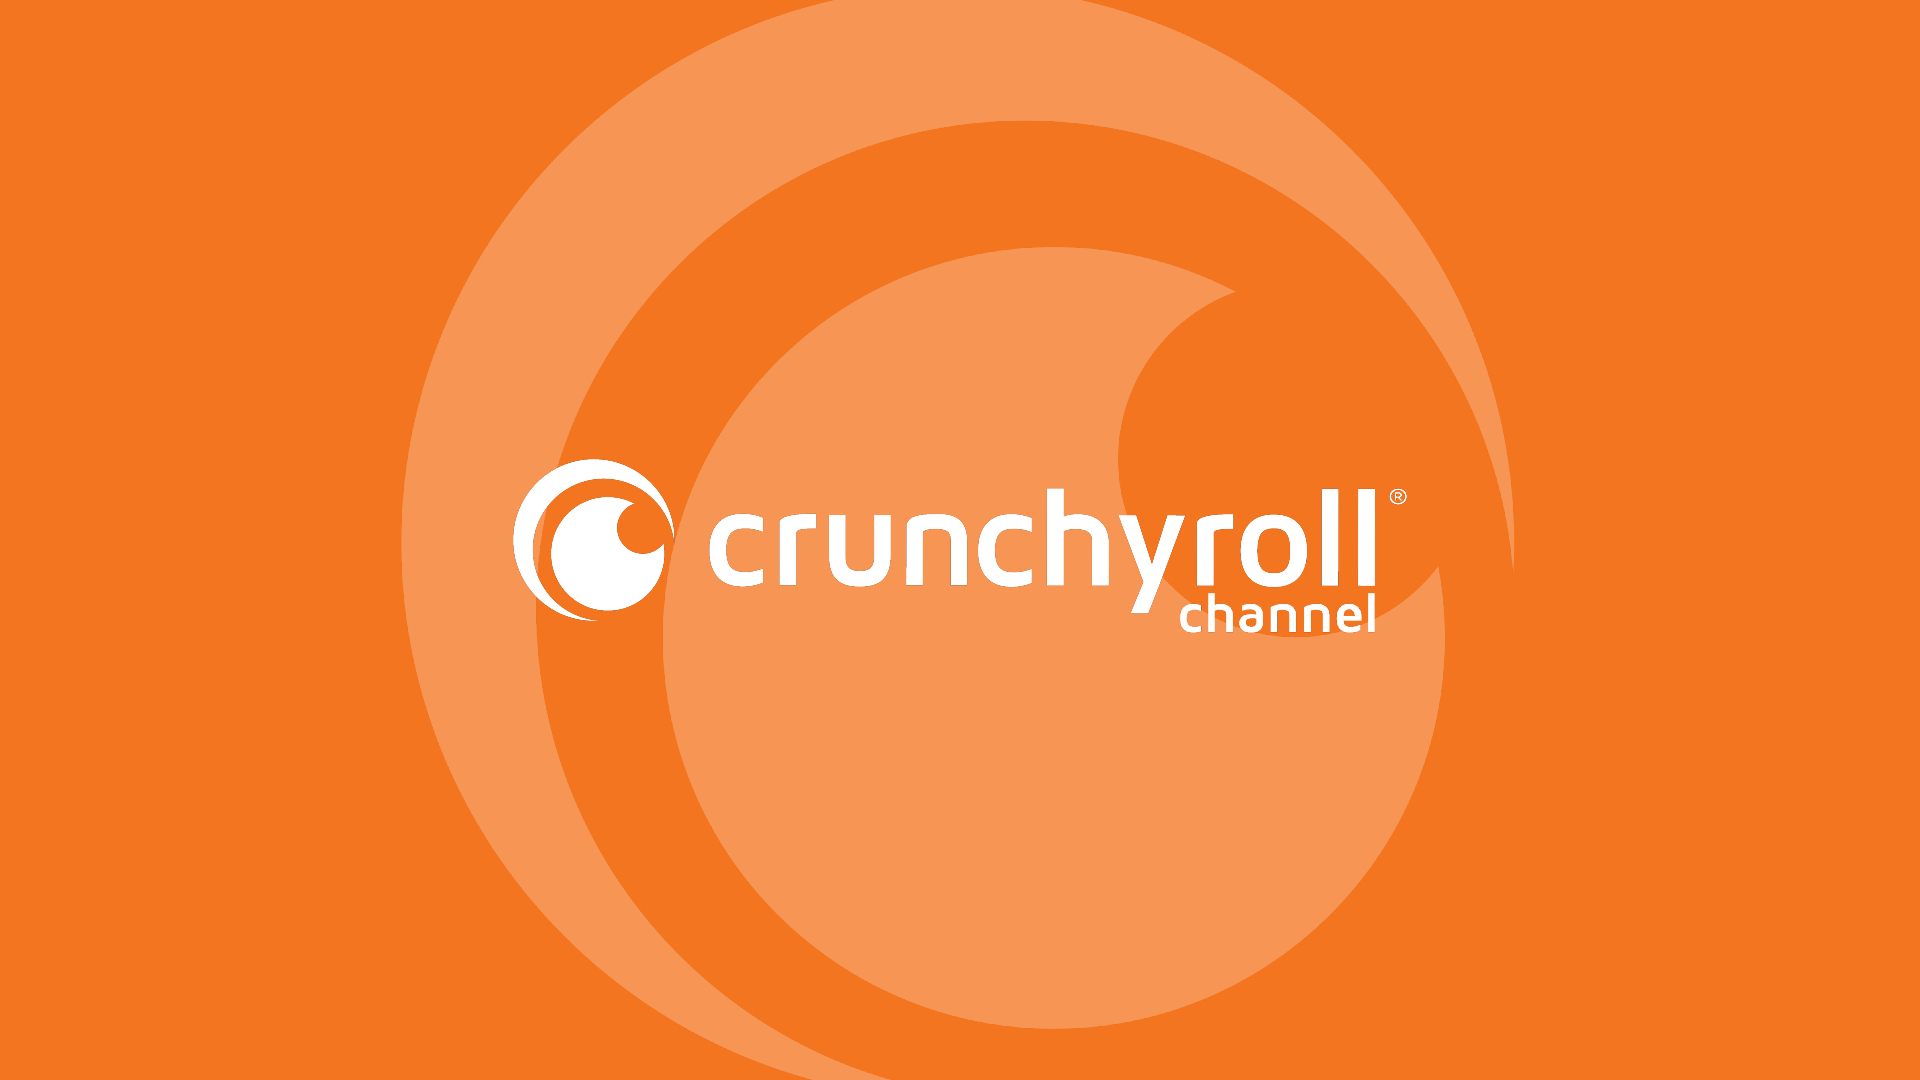 A Crunchyroll agora é da Warner? Entenda o caso